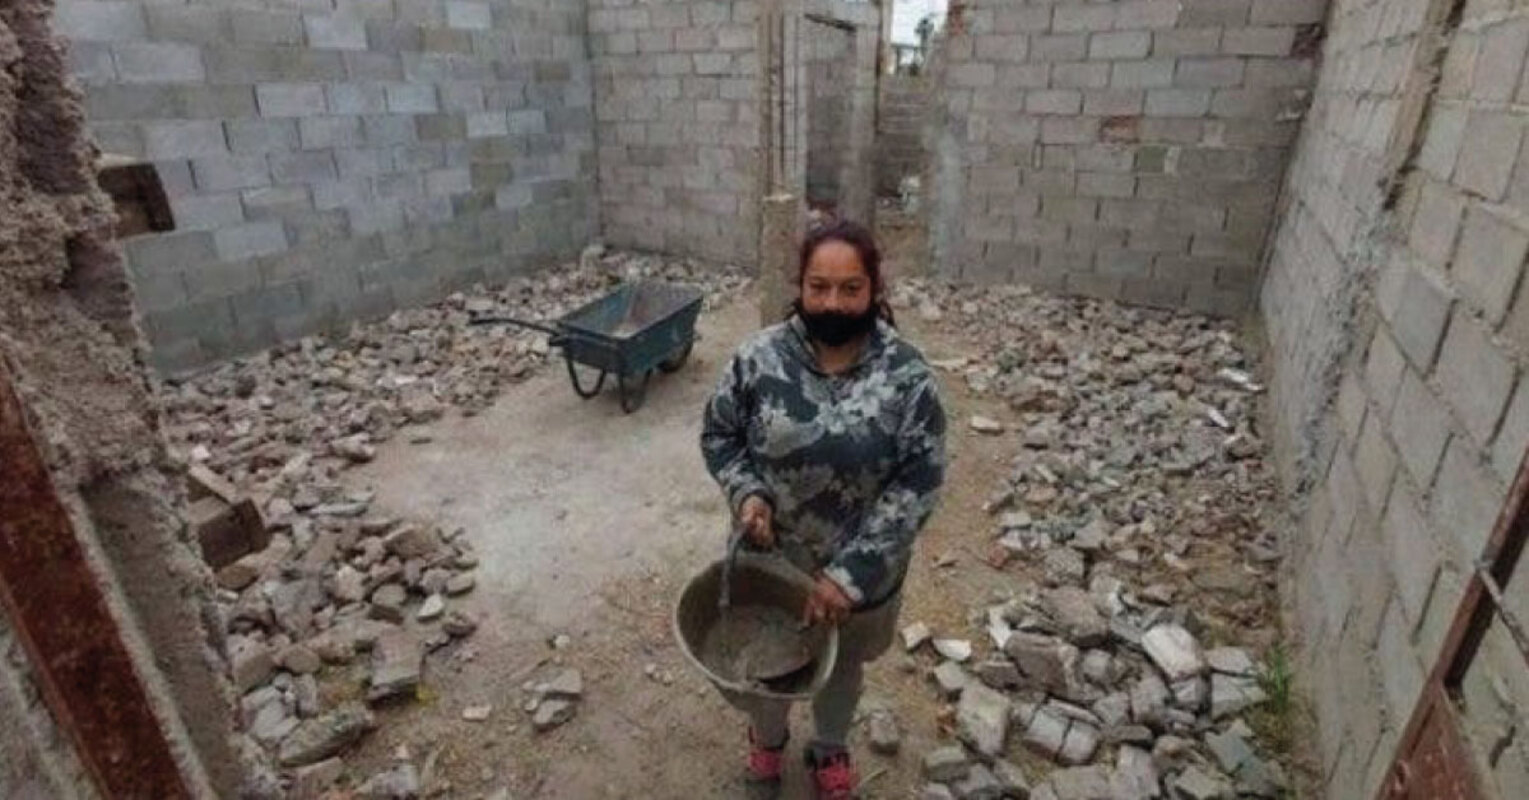 Mãe solteira decide construir sua própria casa sozinha porque não podia pagar os pedreiros